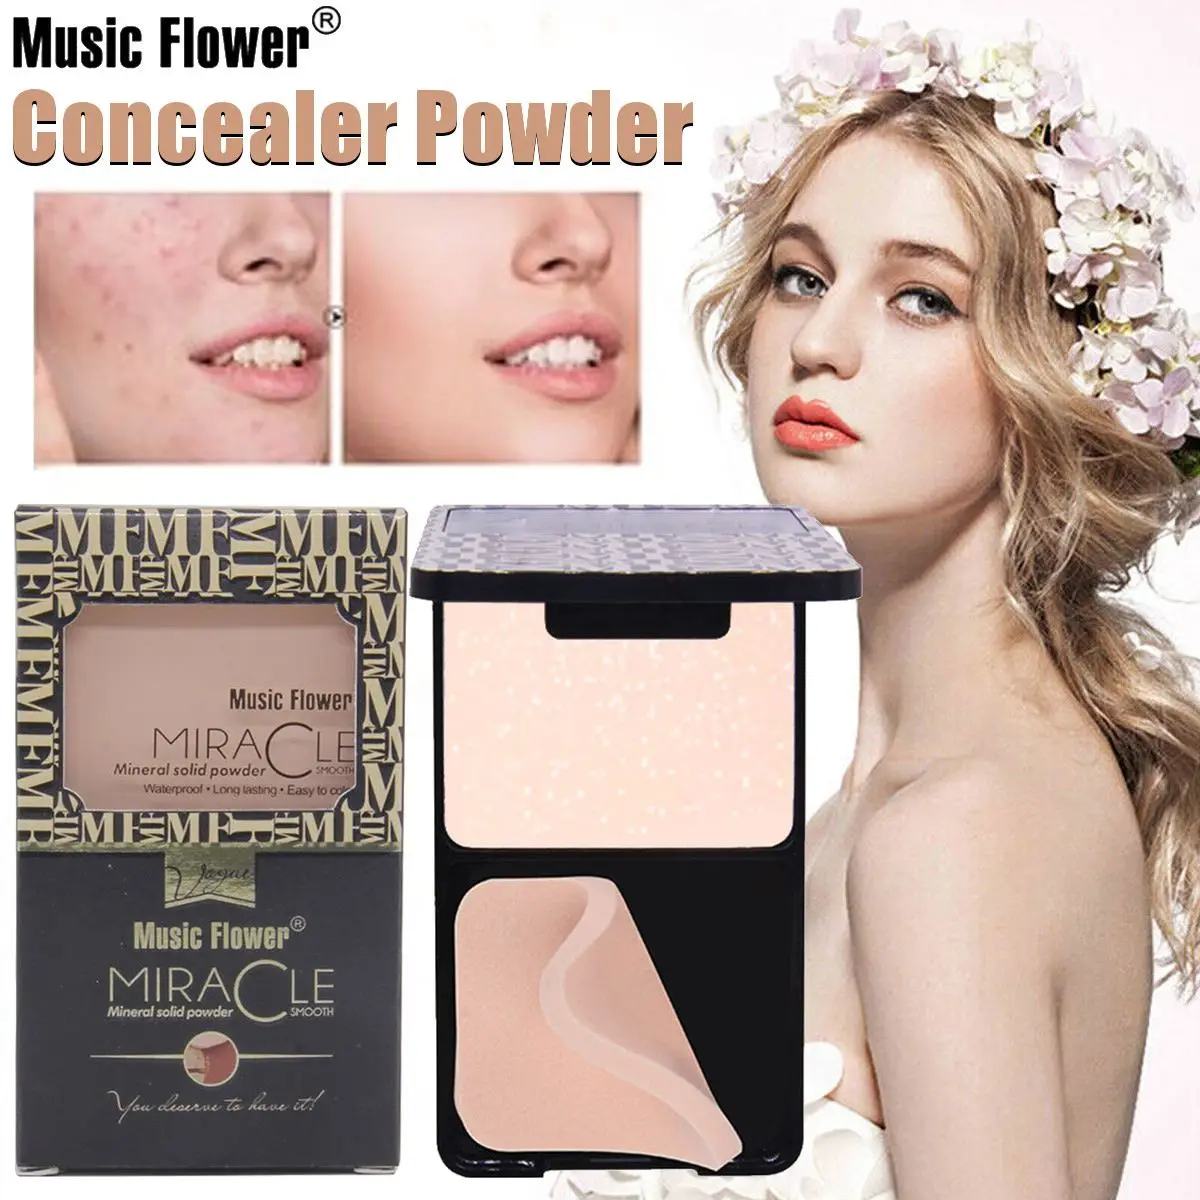 Music Flower Repair пудра палитра основа для лица макияж консилер слоеный силуэт компактный сухой и влажный консилер пудра